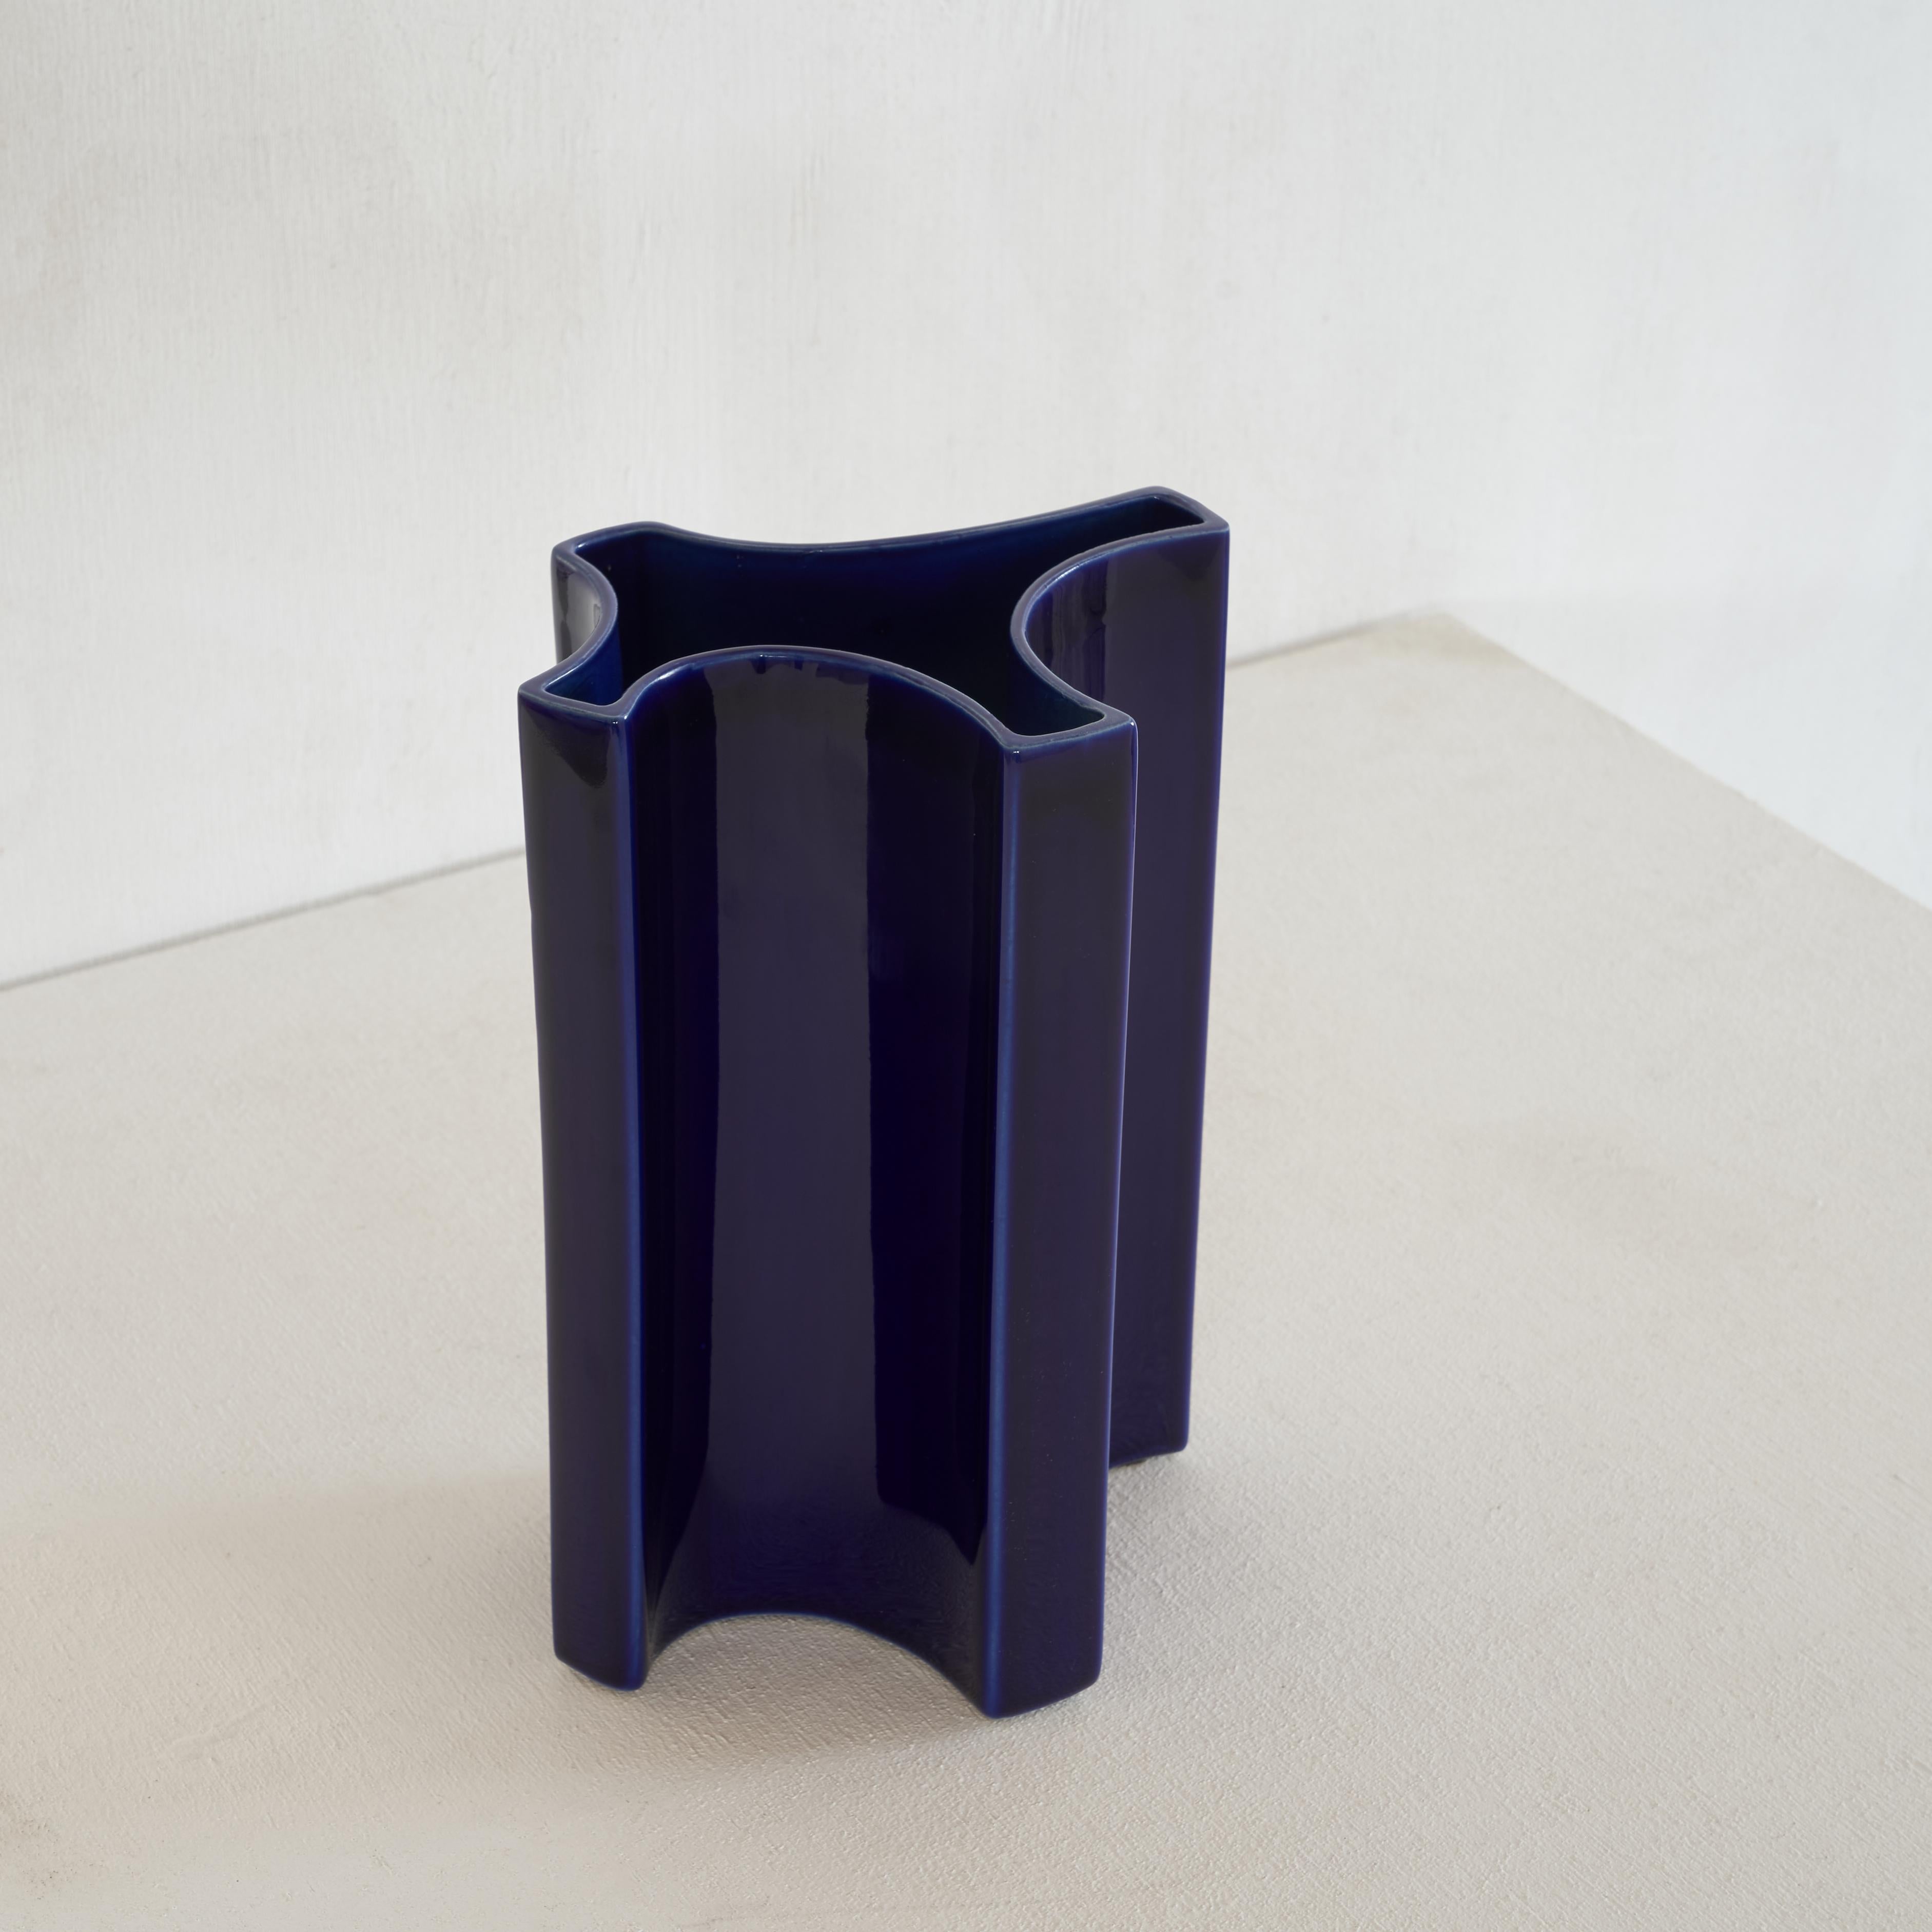 Fantastique vase de forme libre par Angelo Mangiarotti (1921 - 2012) dans une grande couleur bleue pour Fratelli Brambilla Milano.

Mangiarotti était un homme aux multiples talents et l'un des grands designers du XXe siècle. Il est connu pour ses